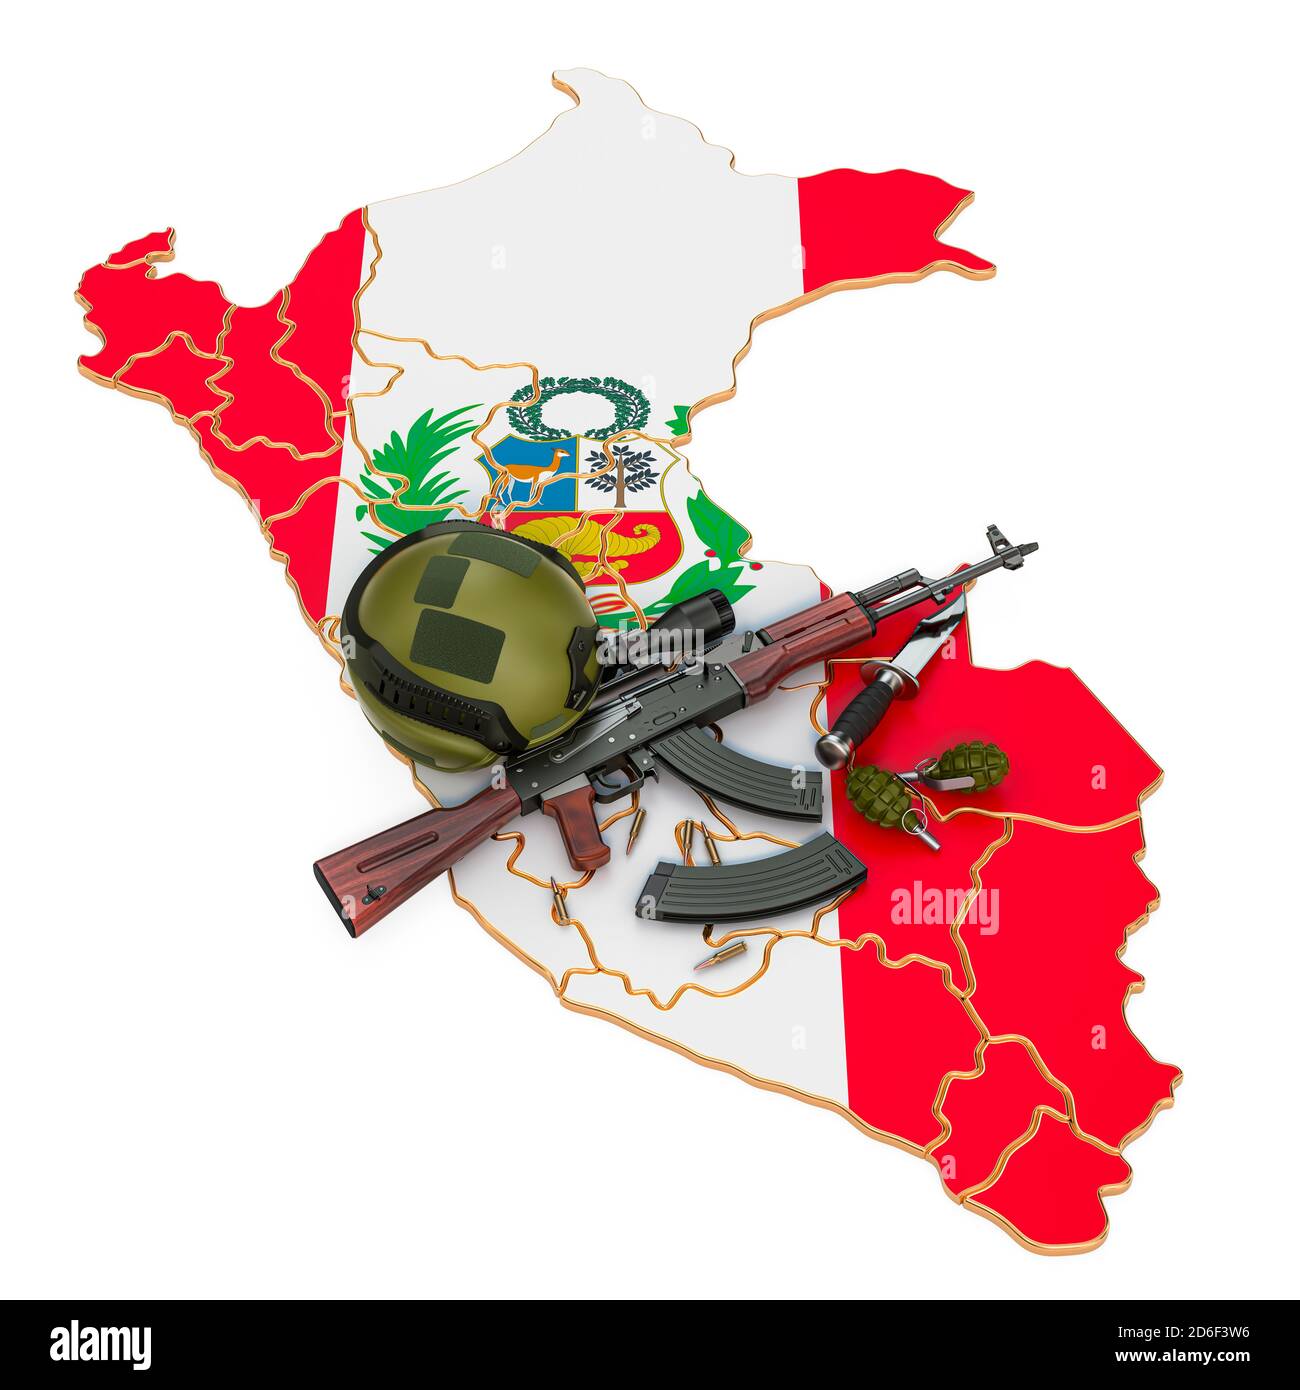 La fuerza militar, el ejército o el conflicto de guerra en el Perú concepto. Renderización 3D aislada sobre fondo blanco Foto de stock